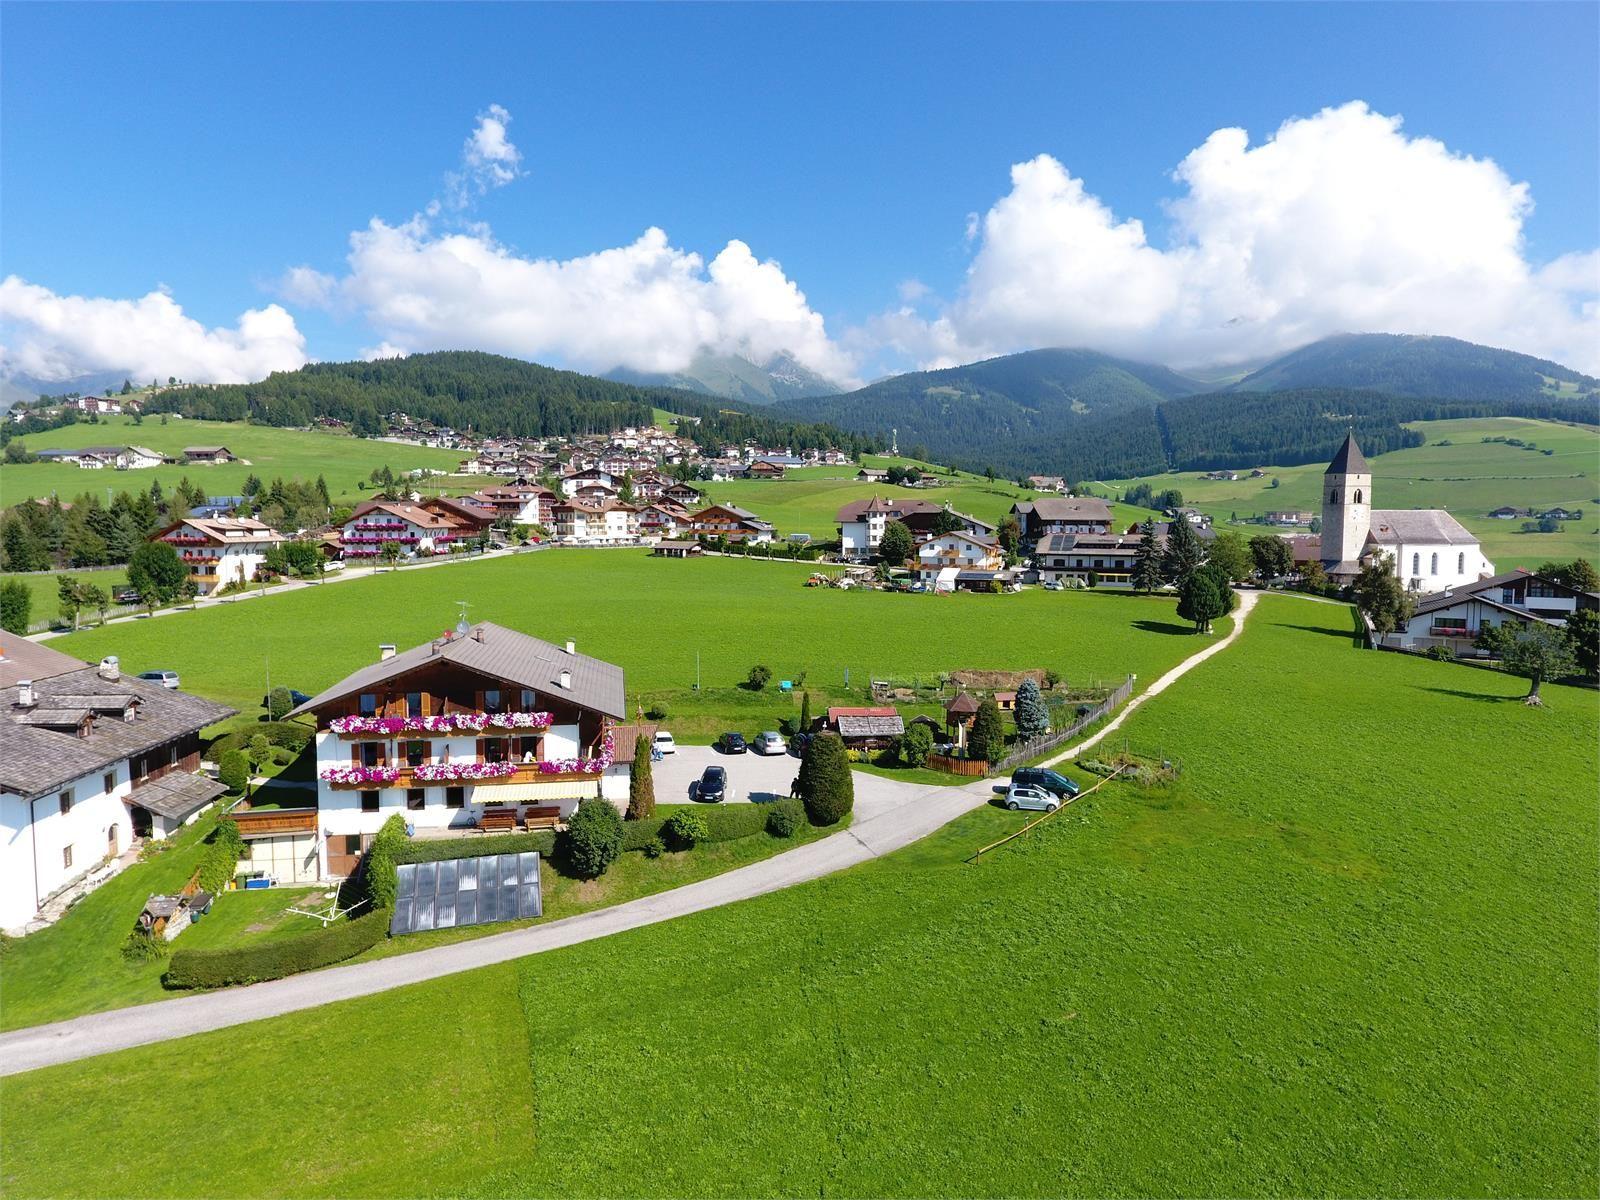 Ferienwohnung für 3 Personen 1 Kind ca 62 m² in Meransen Dolomiten Pustertal